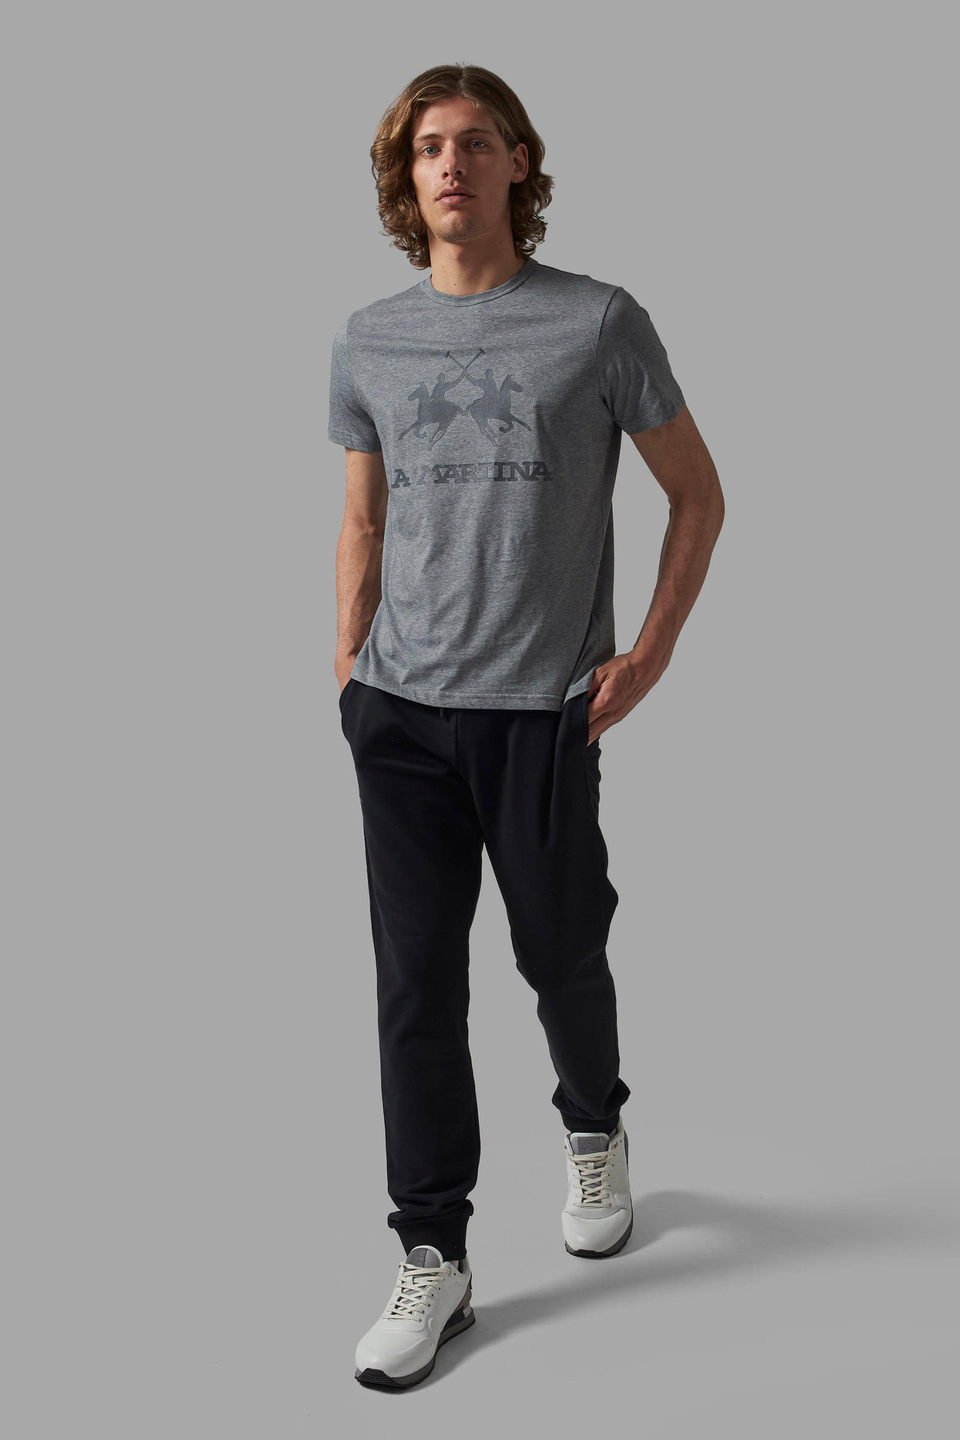 Men's regular-fit cotton trousers | La Martina - Official Online Shop